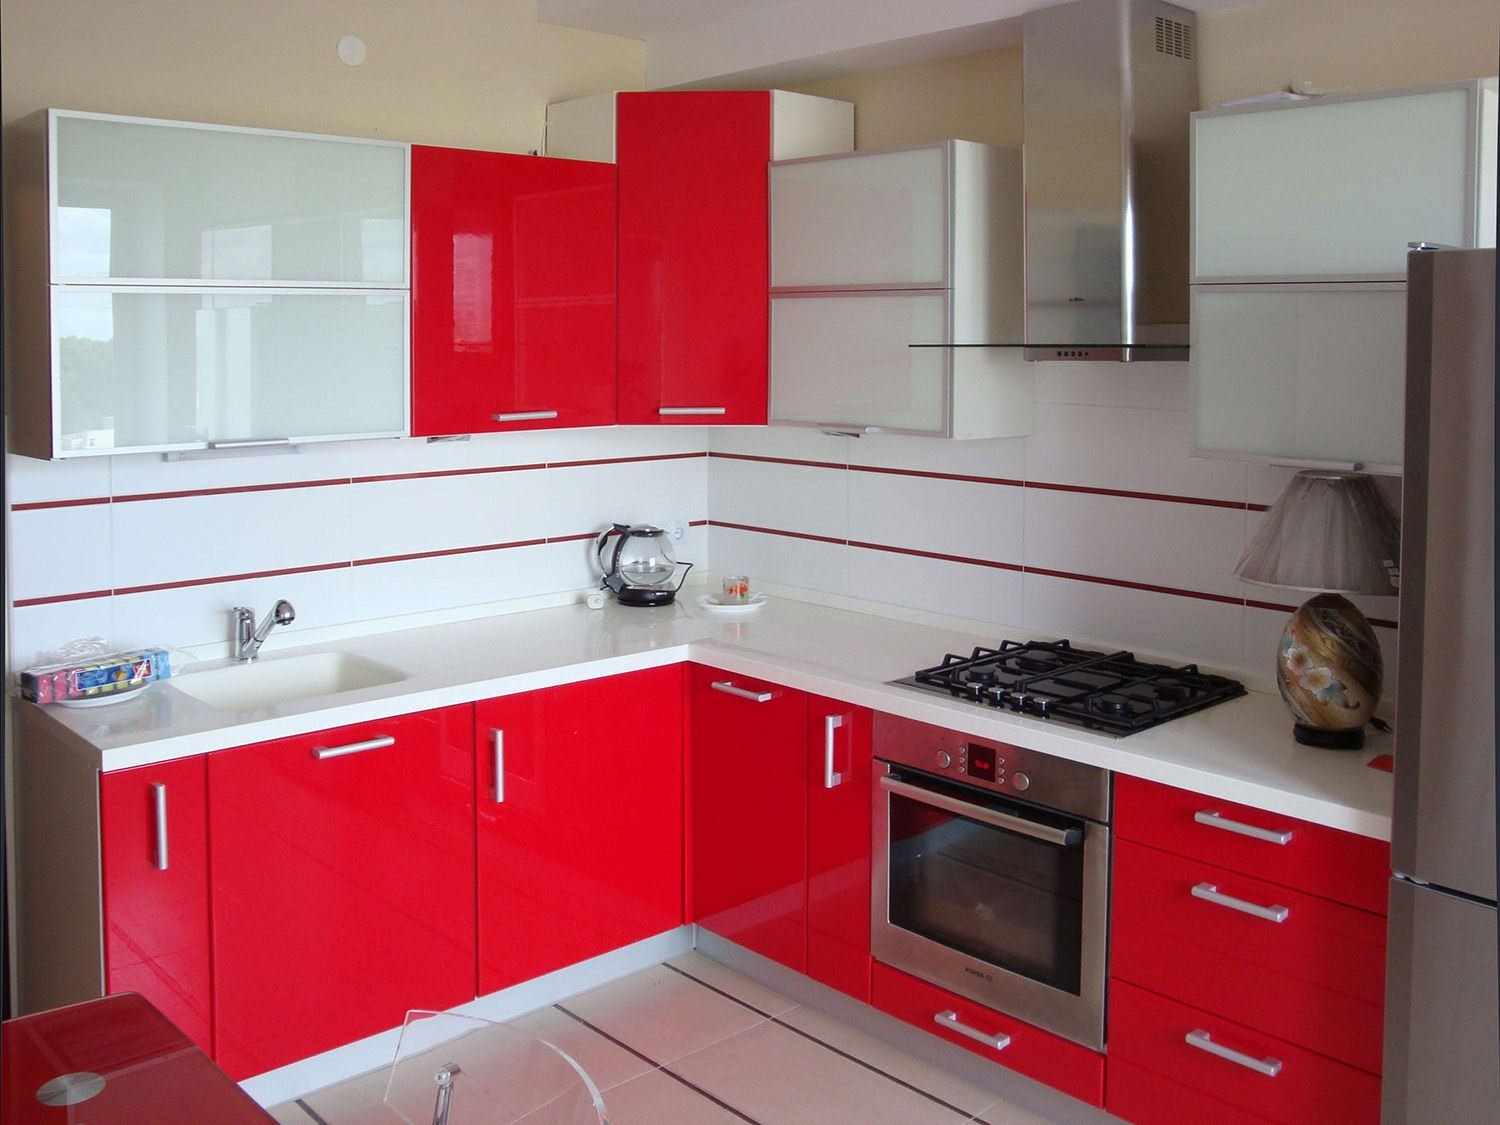 açık kırmızı mutfak tasarımı örneği